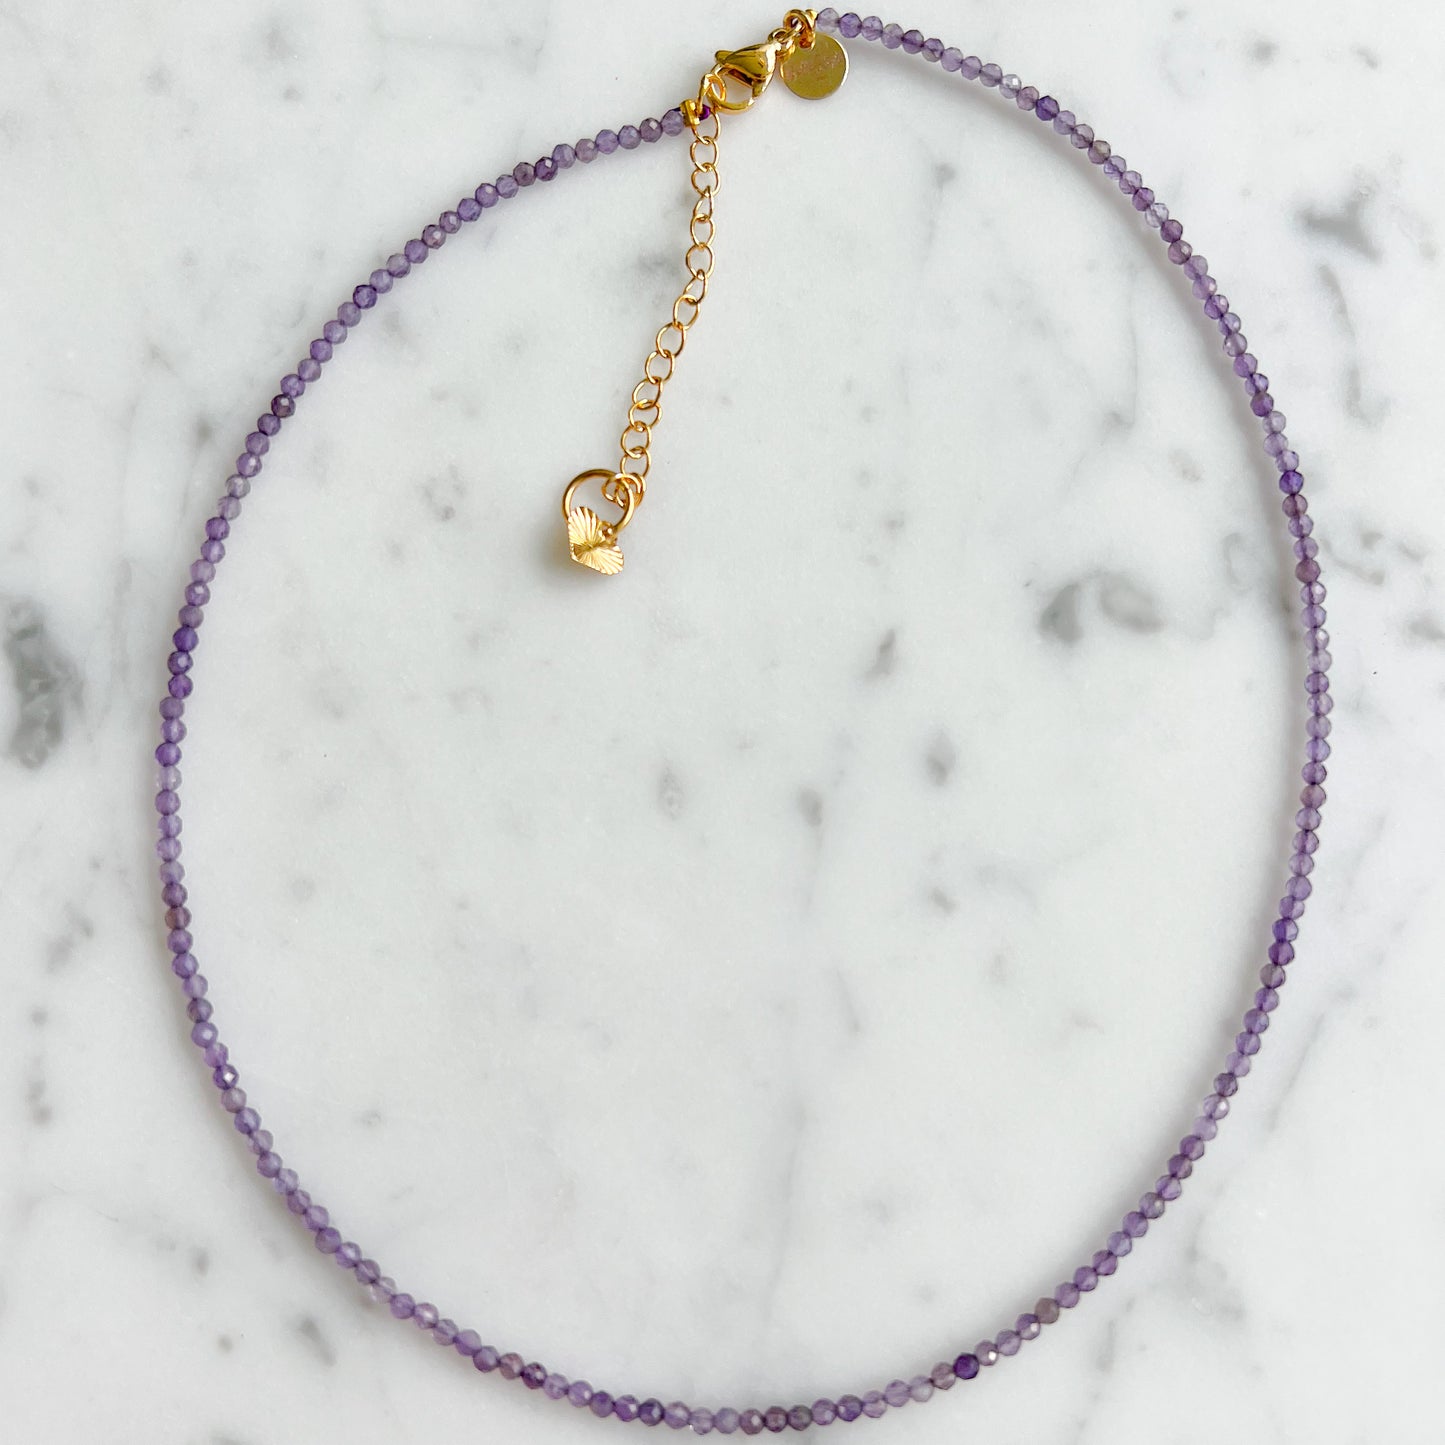 Calm Choker Semi-precious Stone Necklace - BelleStyle